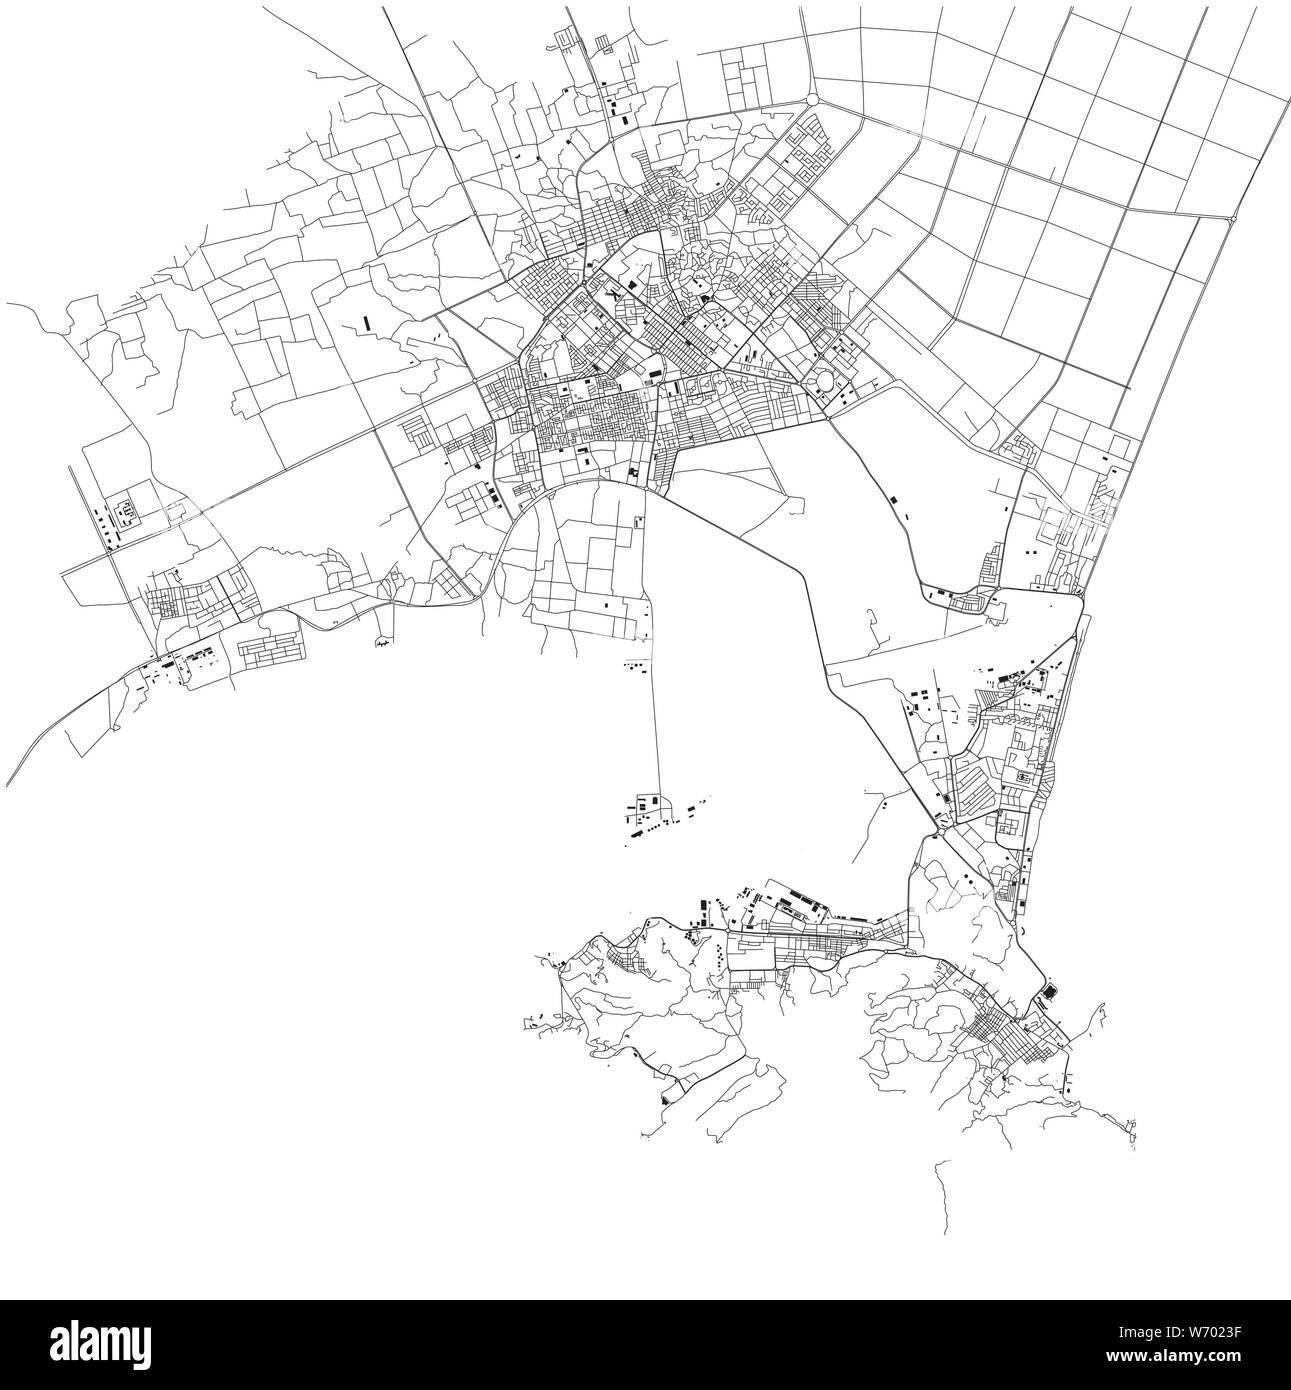 Carte Satellite d'Aden, c'est une ville portuaire du Yémen, situé à l'est par l'approche de la Mer Rouge. Carte des rues et bâtiments du centre-ville Illustration de Vecteur